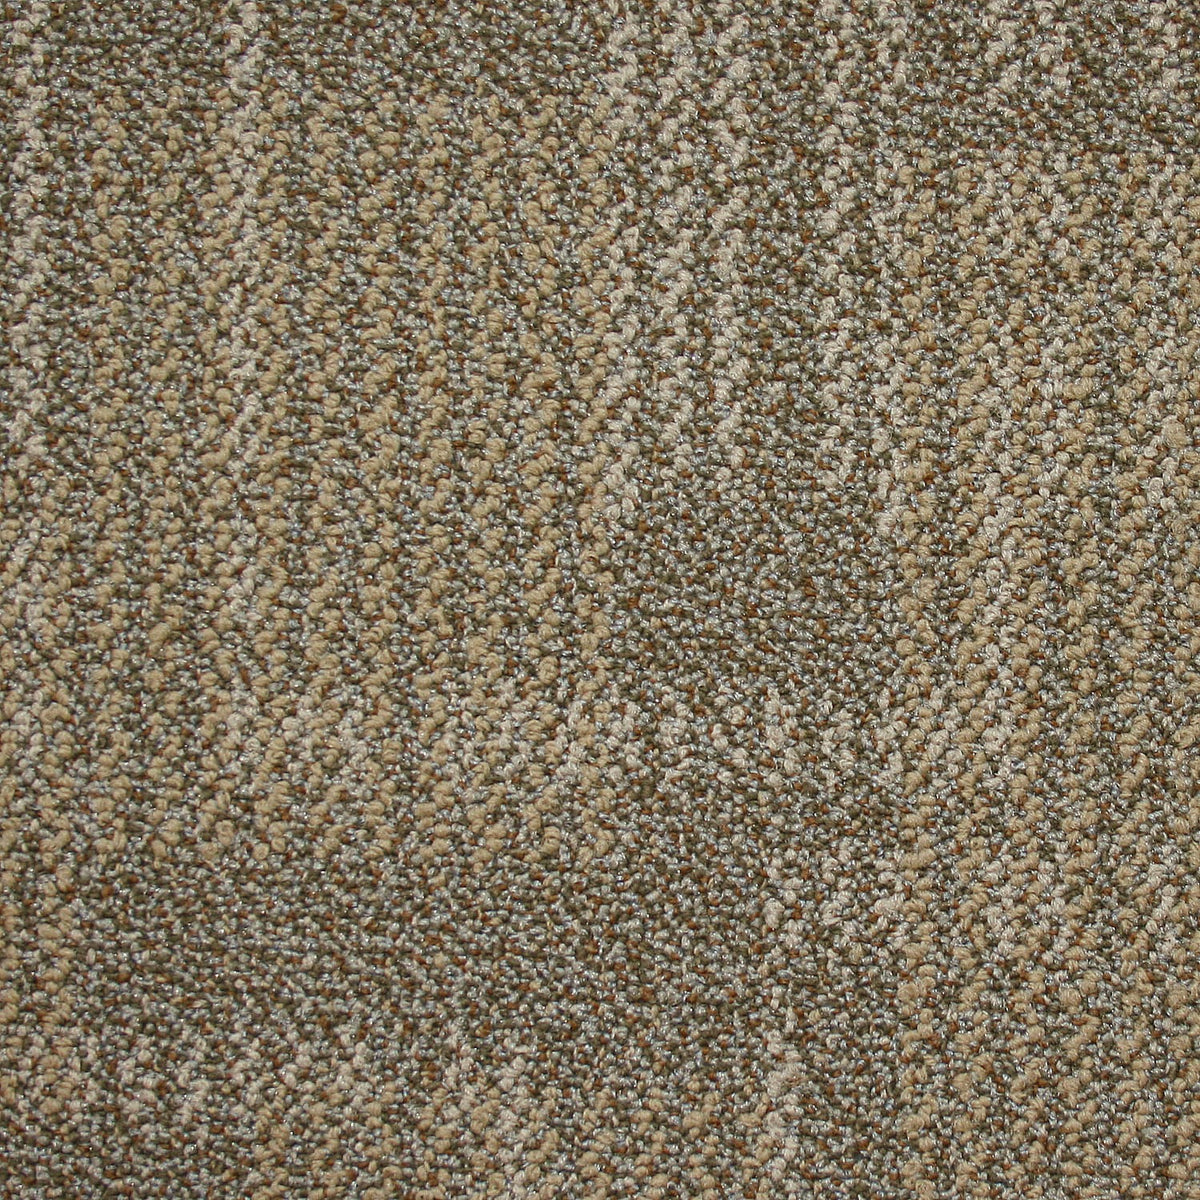 Kraus - Van Der Rohe- Carpet Tile - Deep Ochre